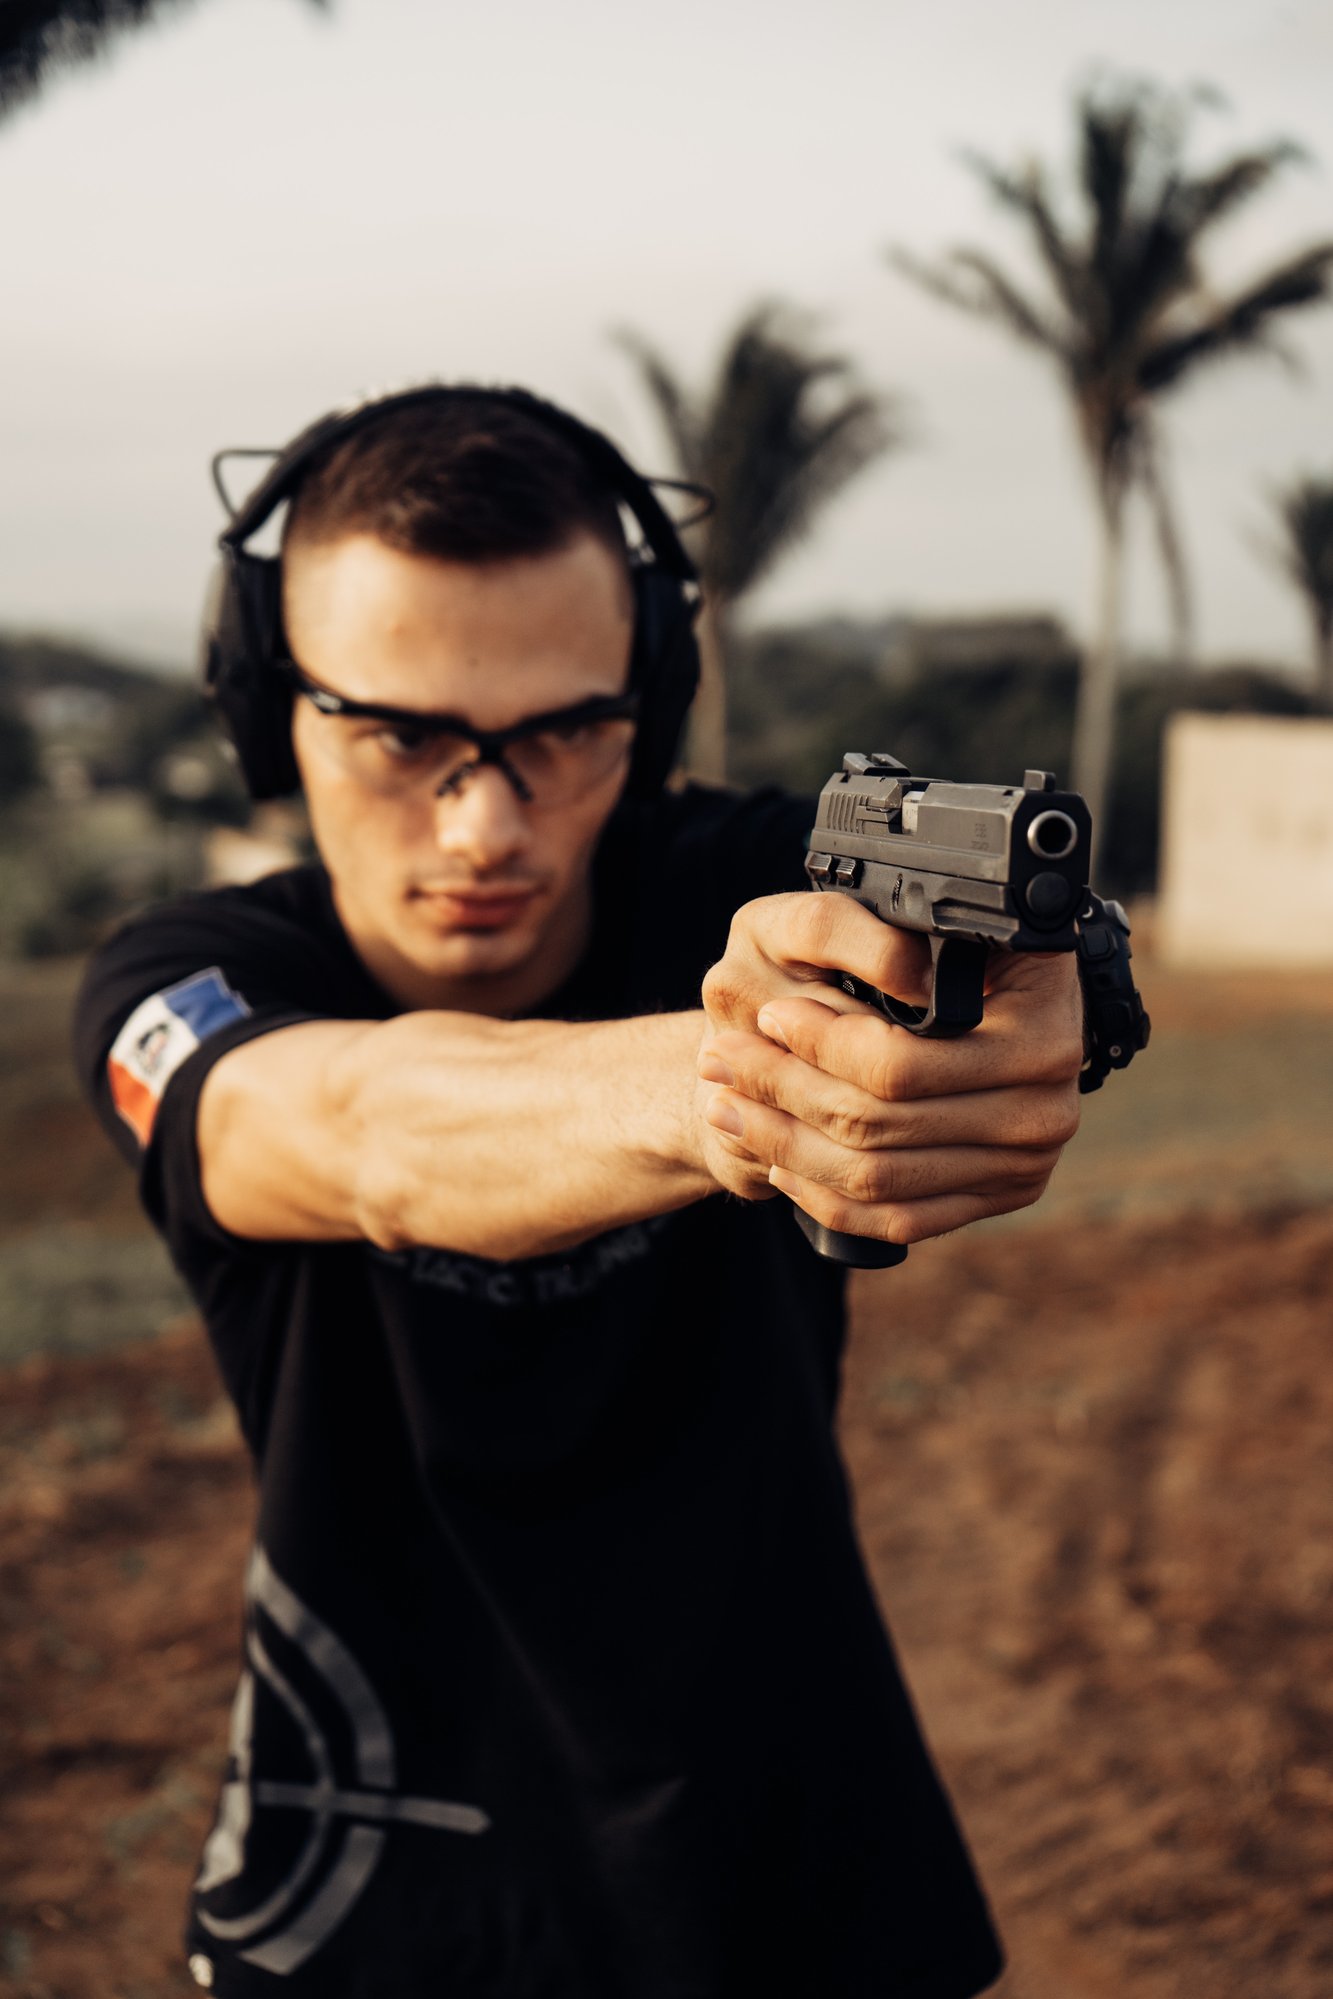 Handgun shooting with eye and ear protection